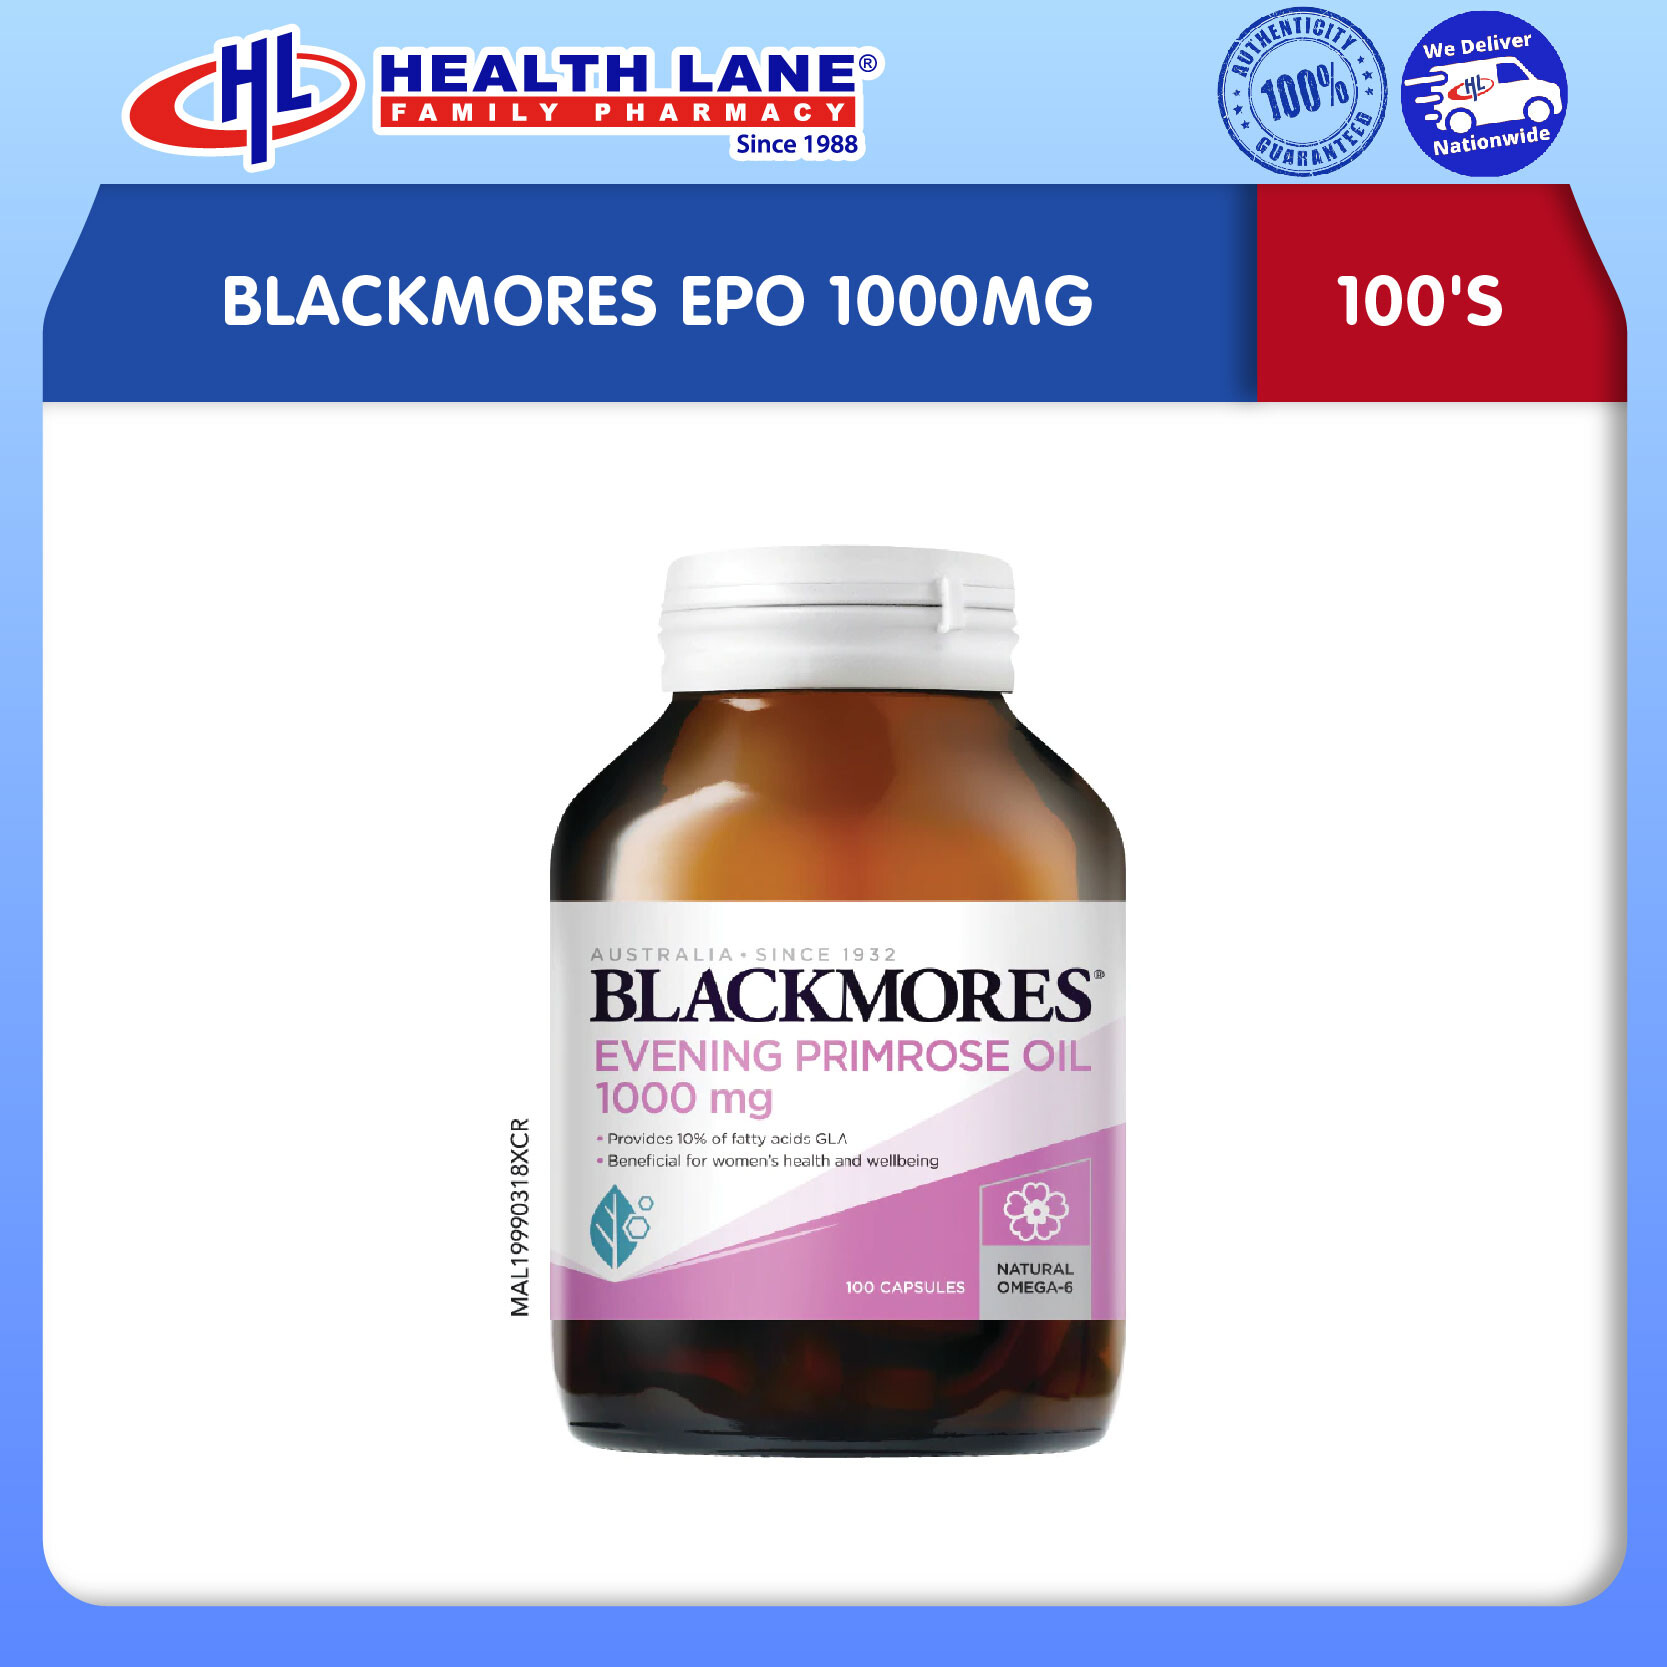 BLACKMORES EPO 1000MG (100'S)